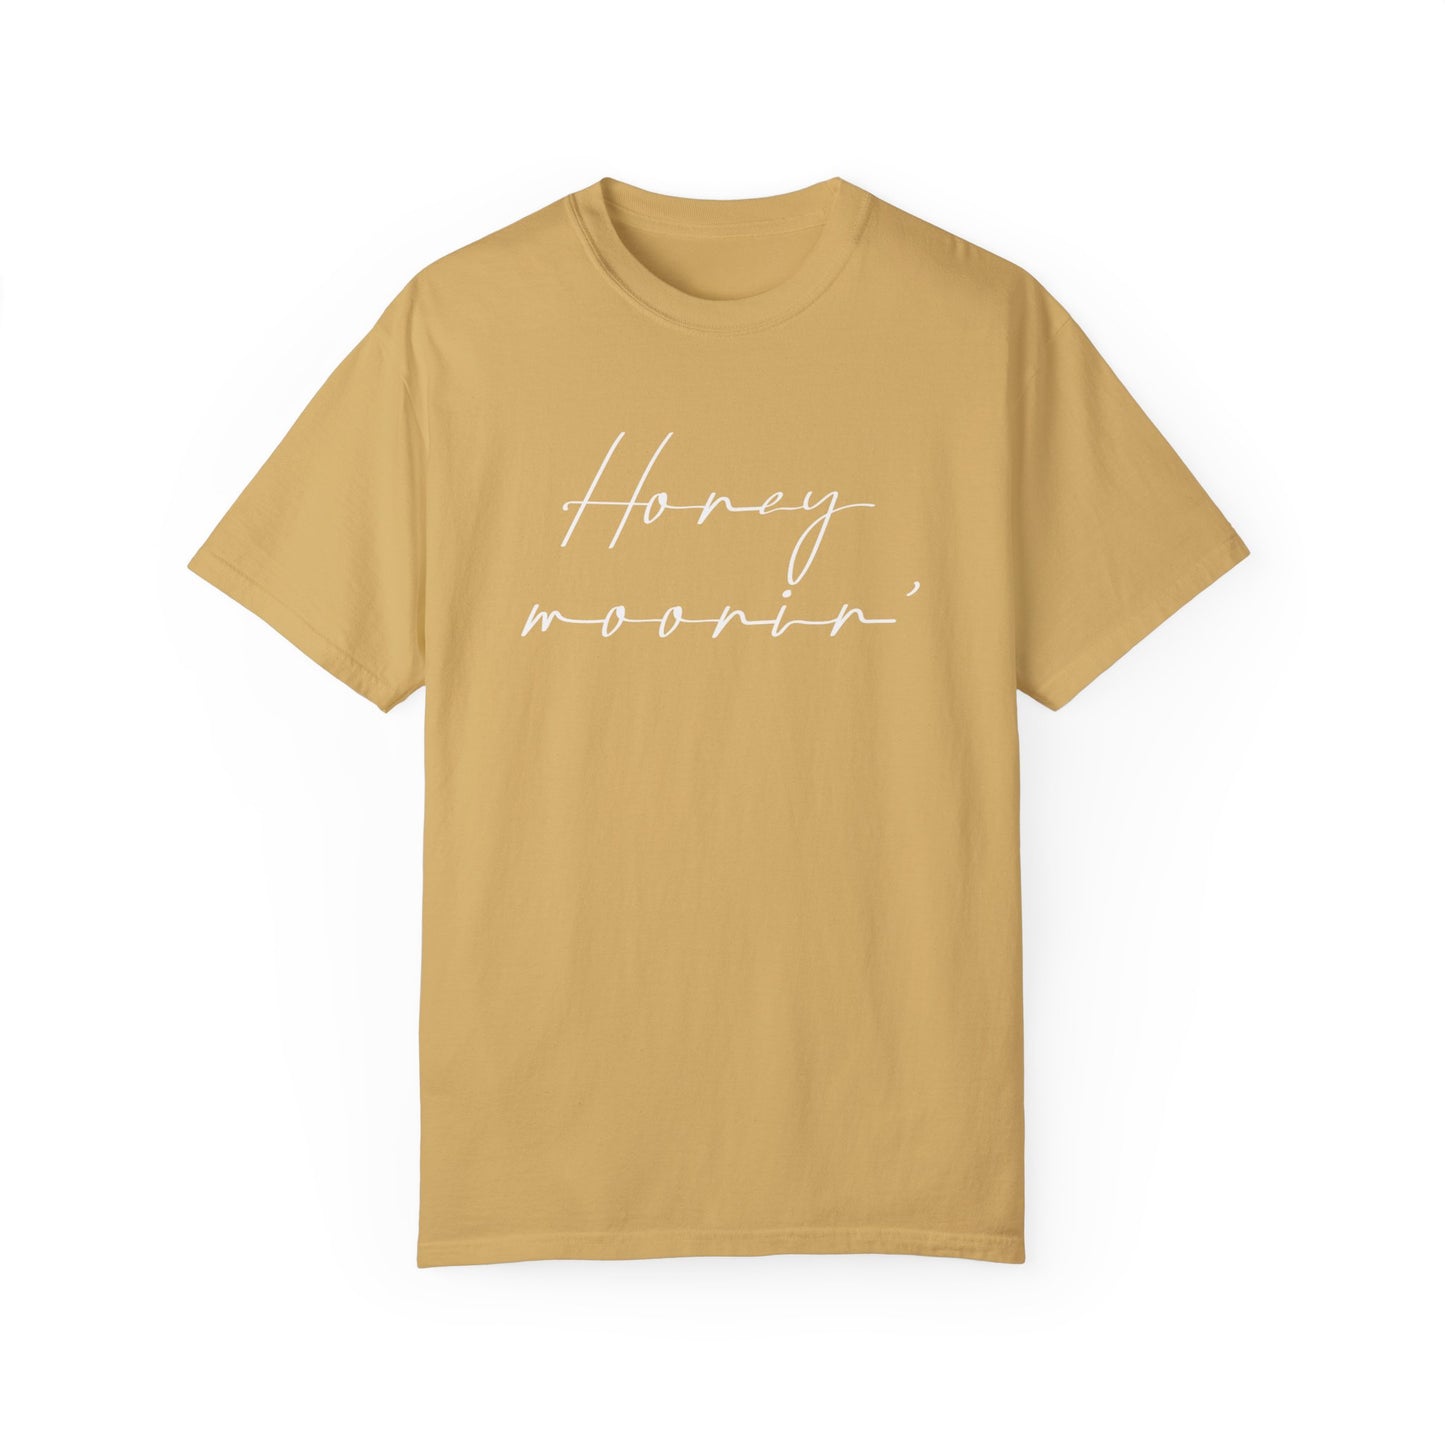 Honeymoon Shirt